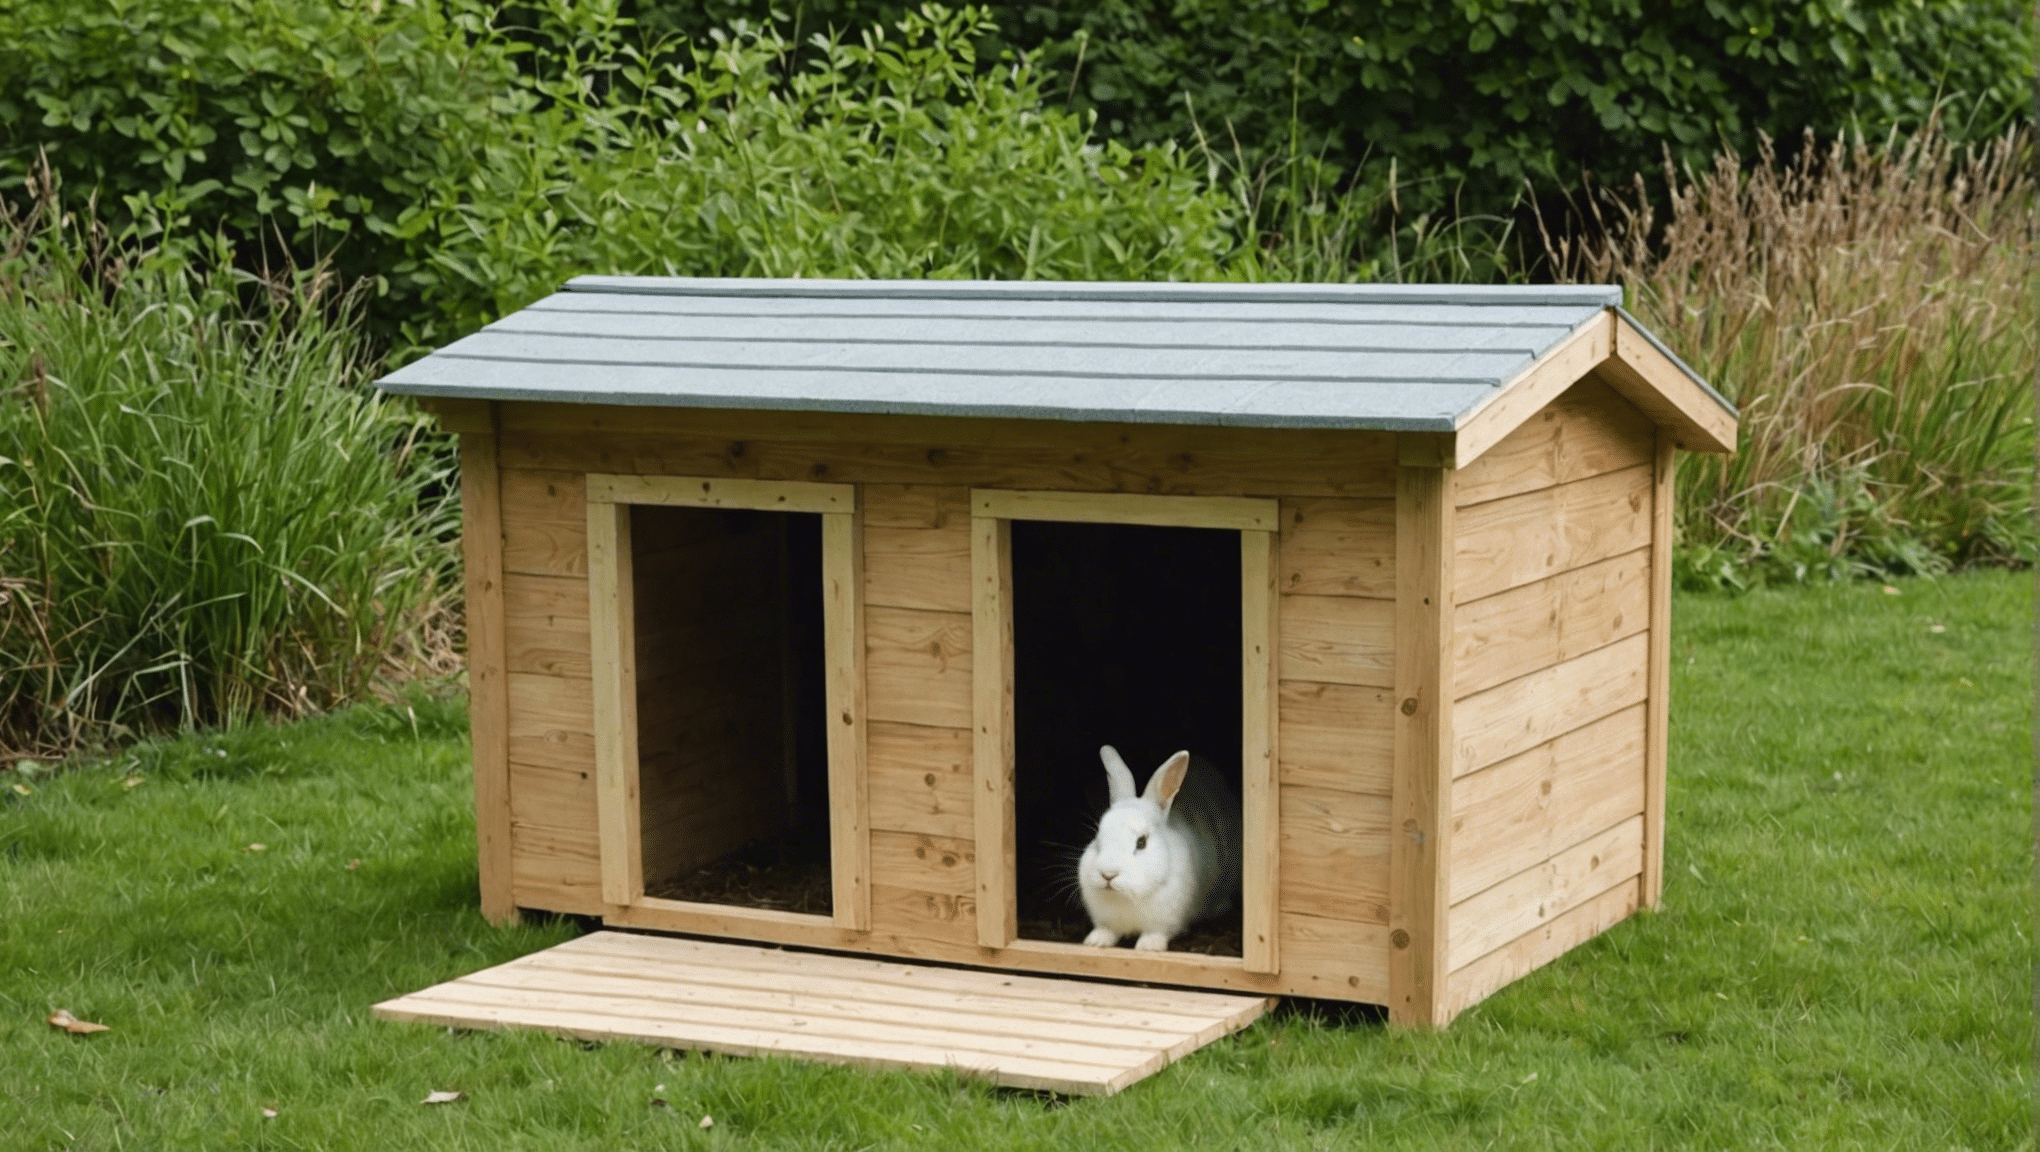 découvrez comment construire un abri pour lapin étape par étape avec nos conseils pratiques et nos idées de matériaux à utiliser.